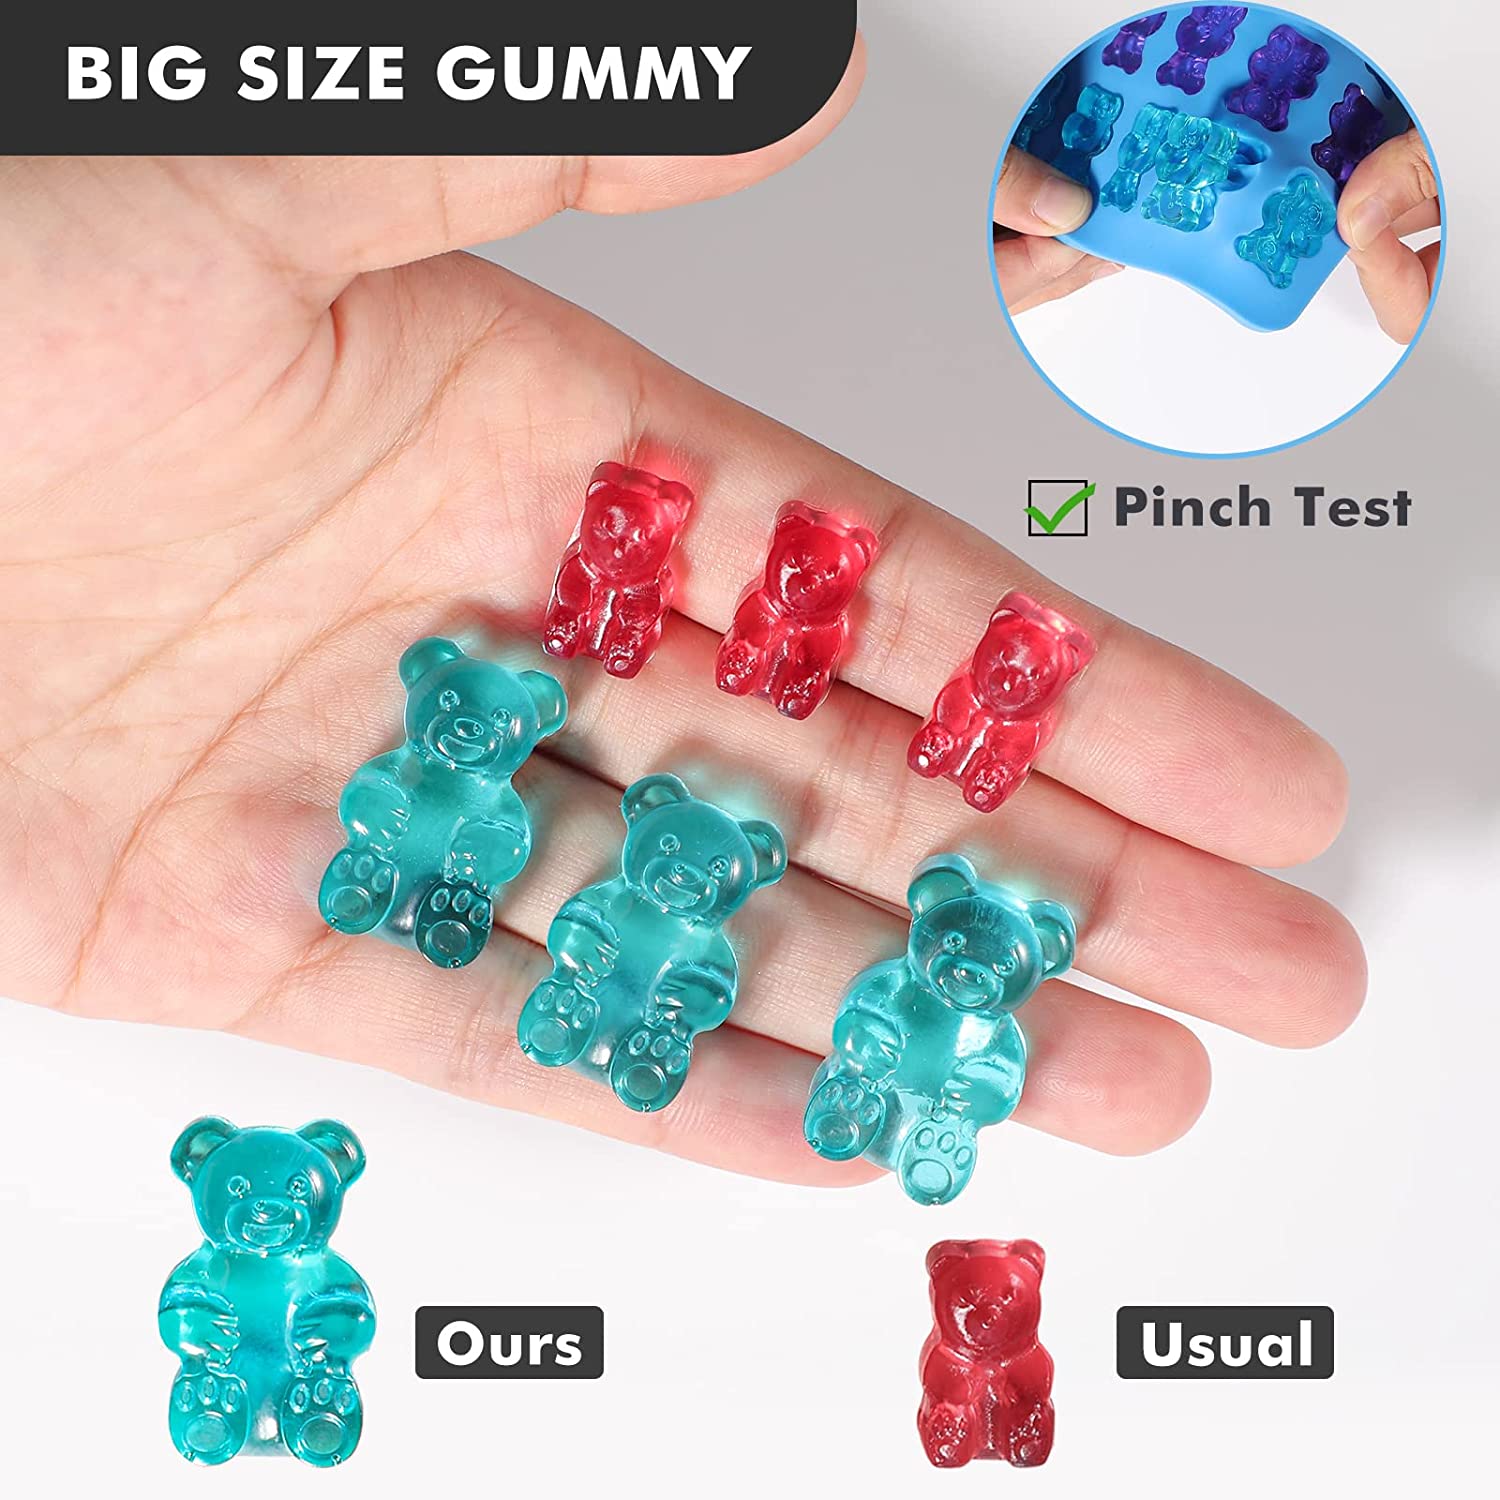 1.5 mL Gummy Bear Silicone Mold